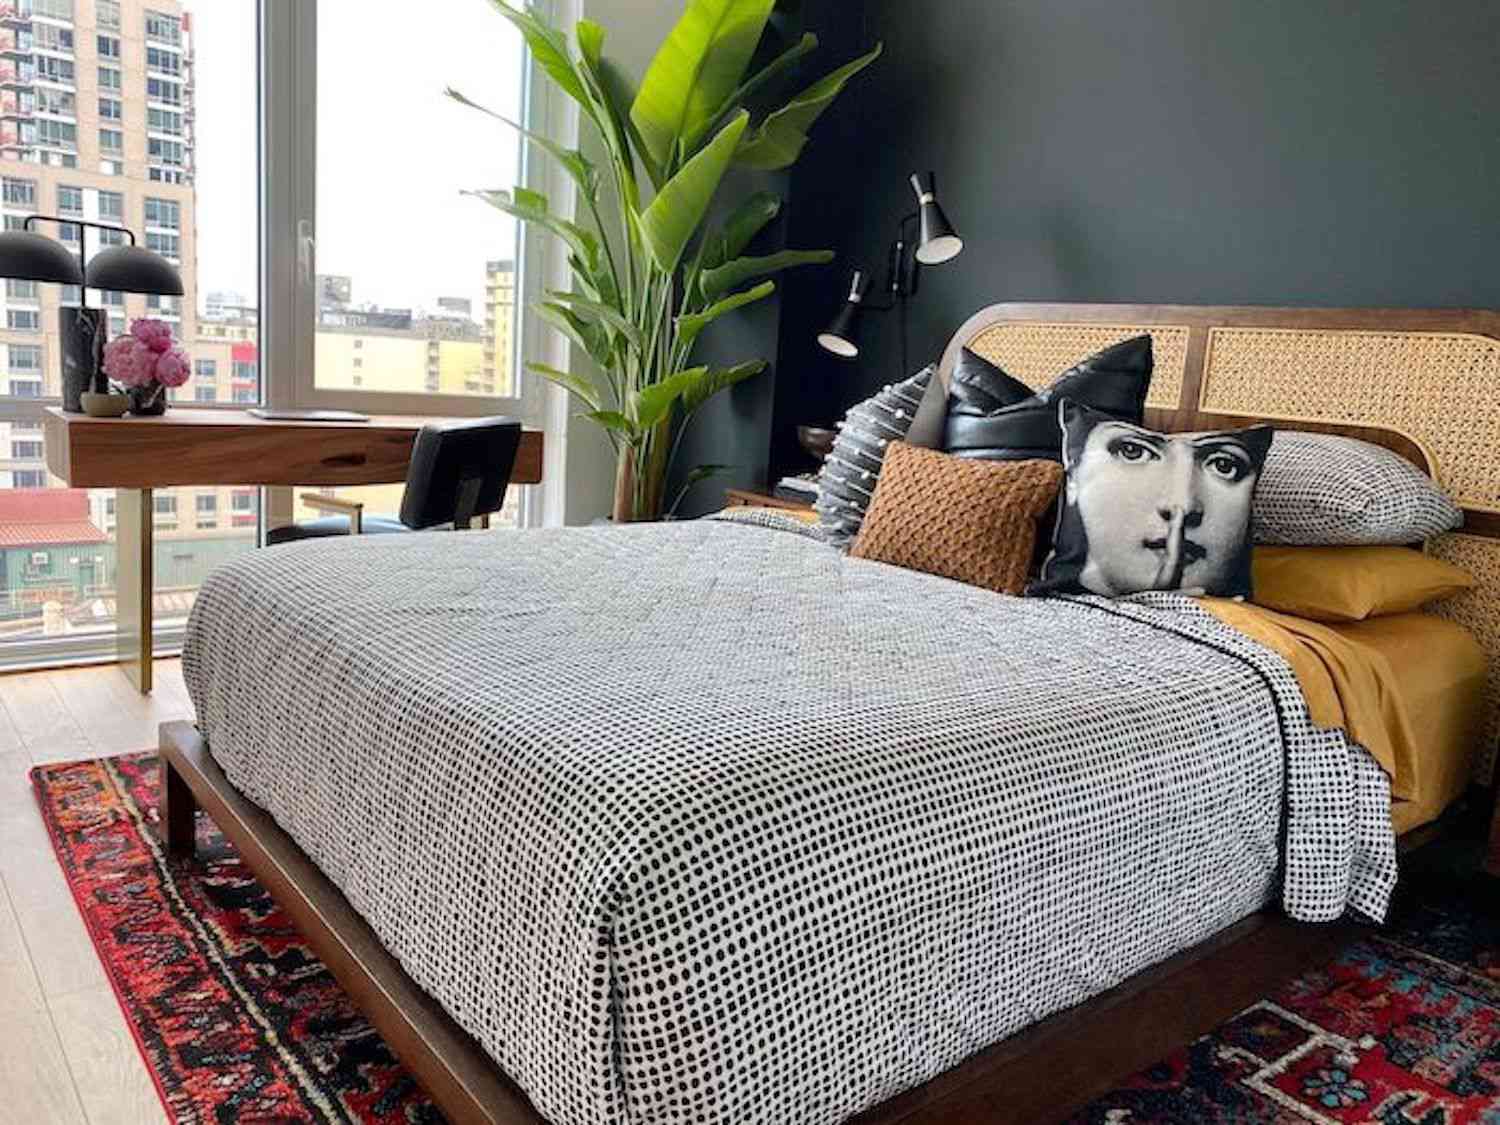 dormitorio moderno con cabecero de mimbre, edredón de lunares blancos y negros, alfombra con estampado rojo, planta grande en una esquina